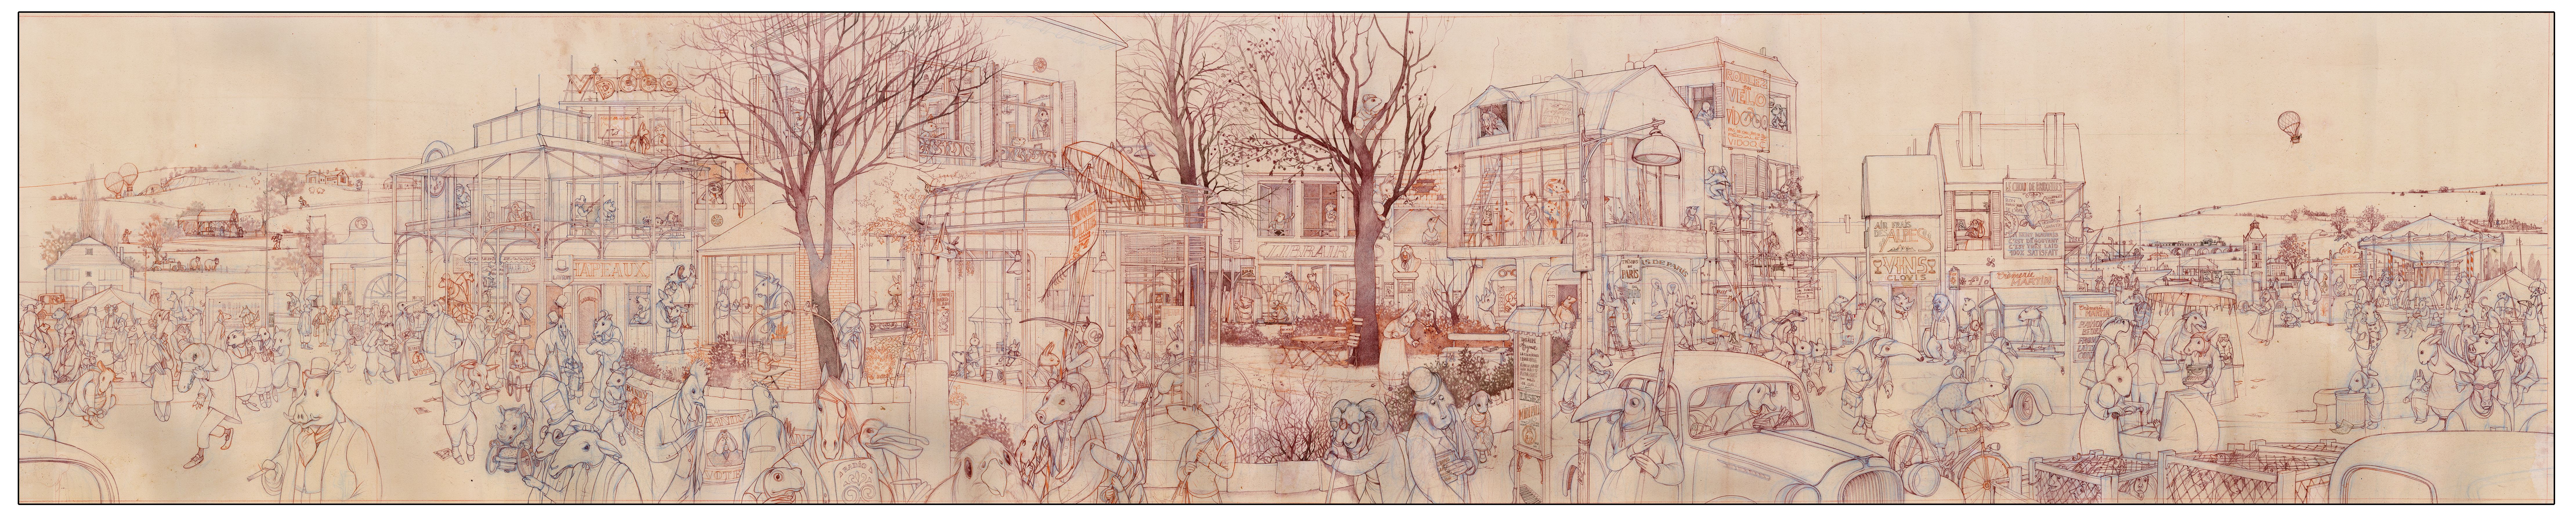 Bild von Skizze des Riesenleporellos aus »Eine winzig kleine Sekunde« von Rébecca Dautremer